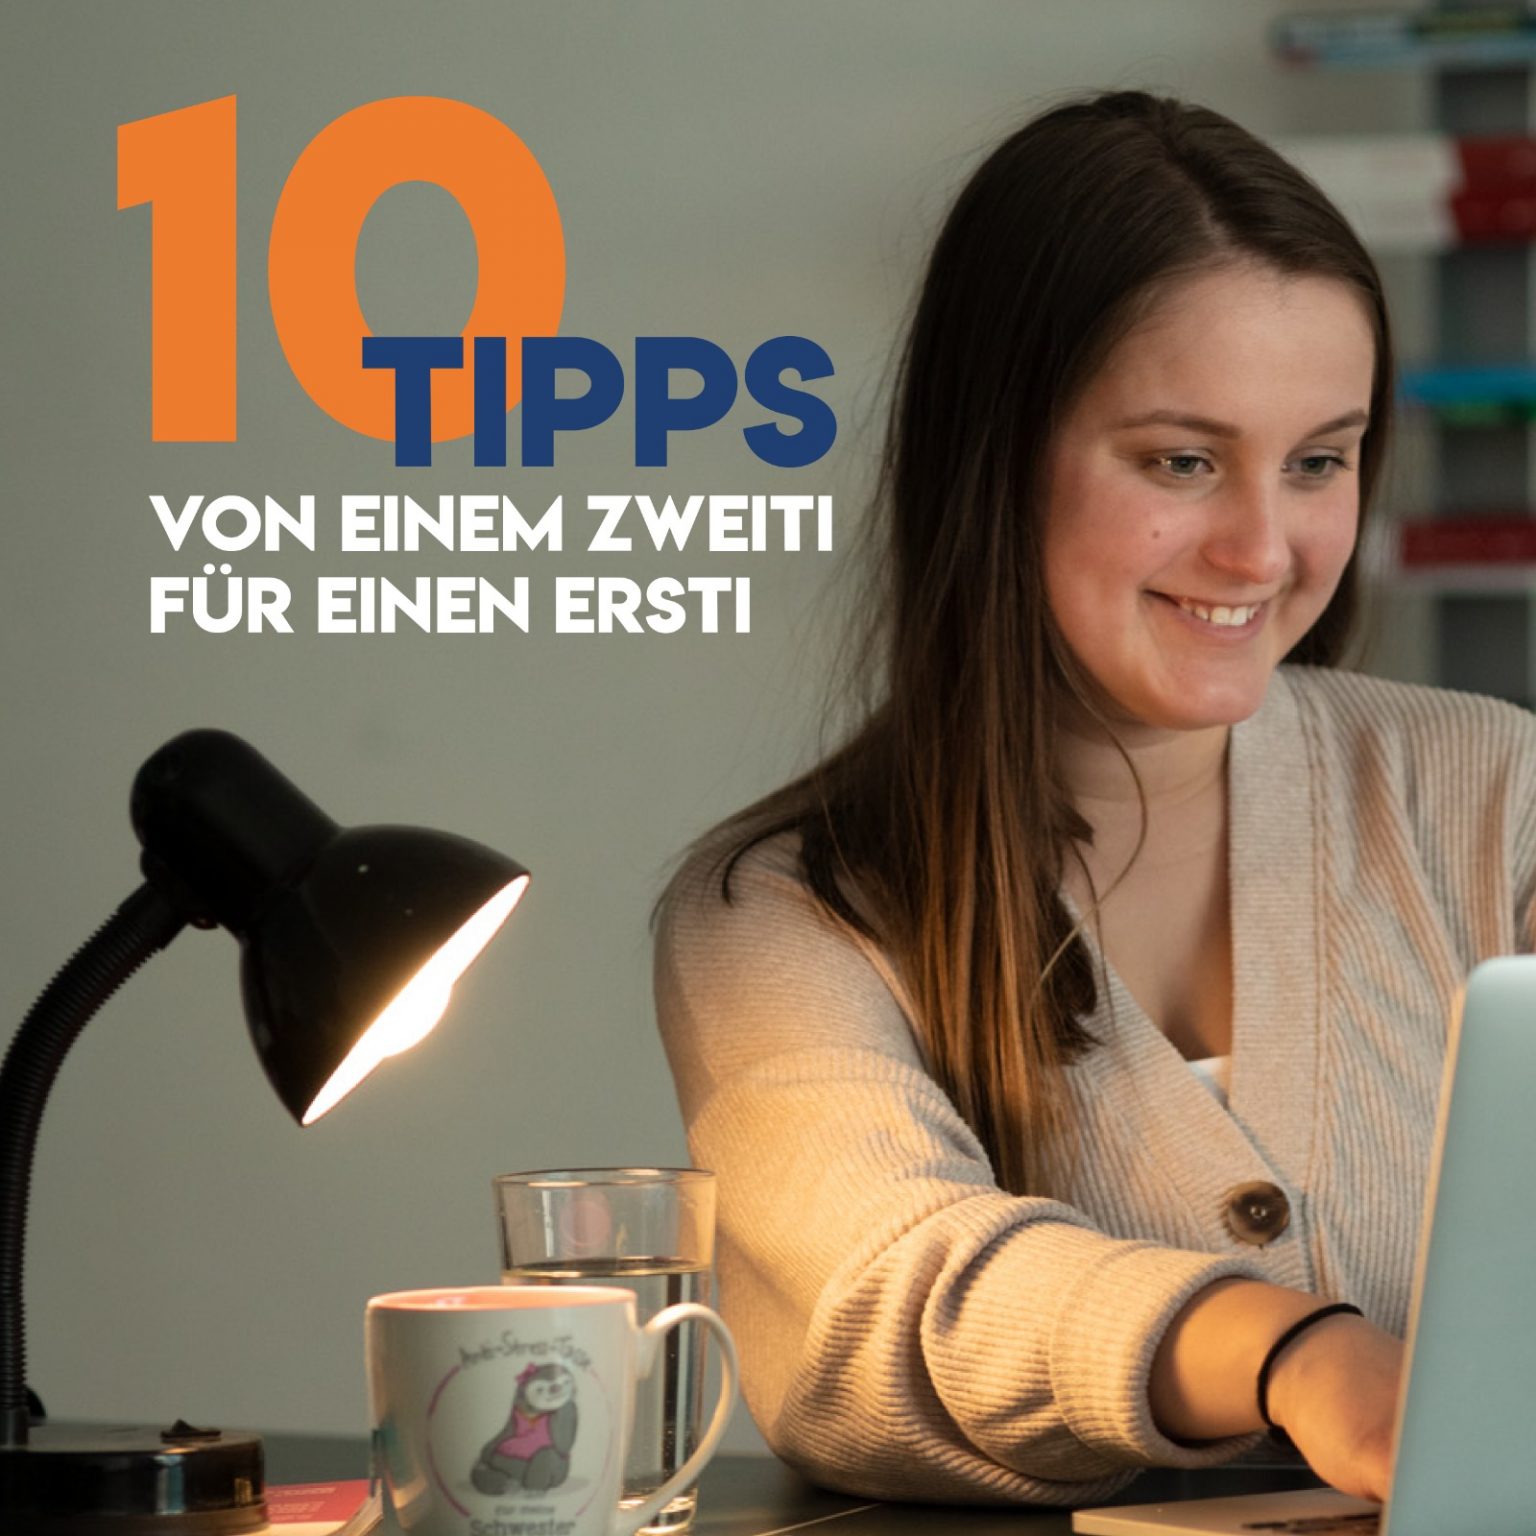 10 Tipps Für Erstis Von Einem Zweiti Aktionsgemeinschaft 